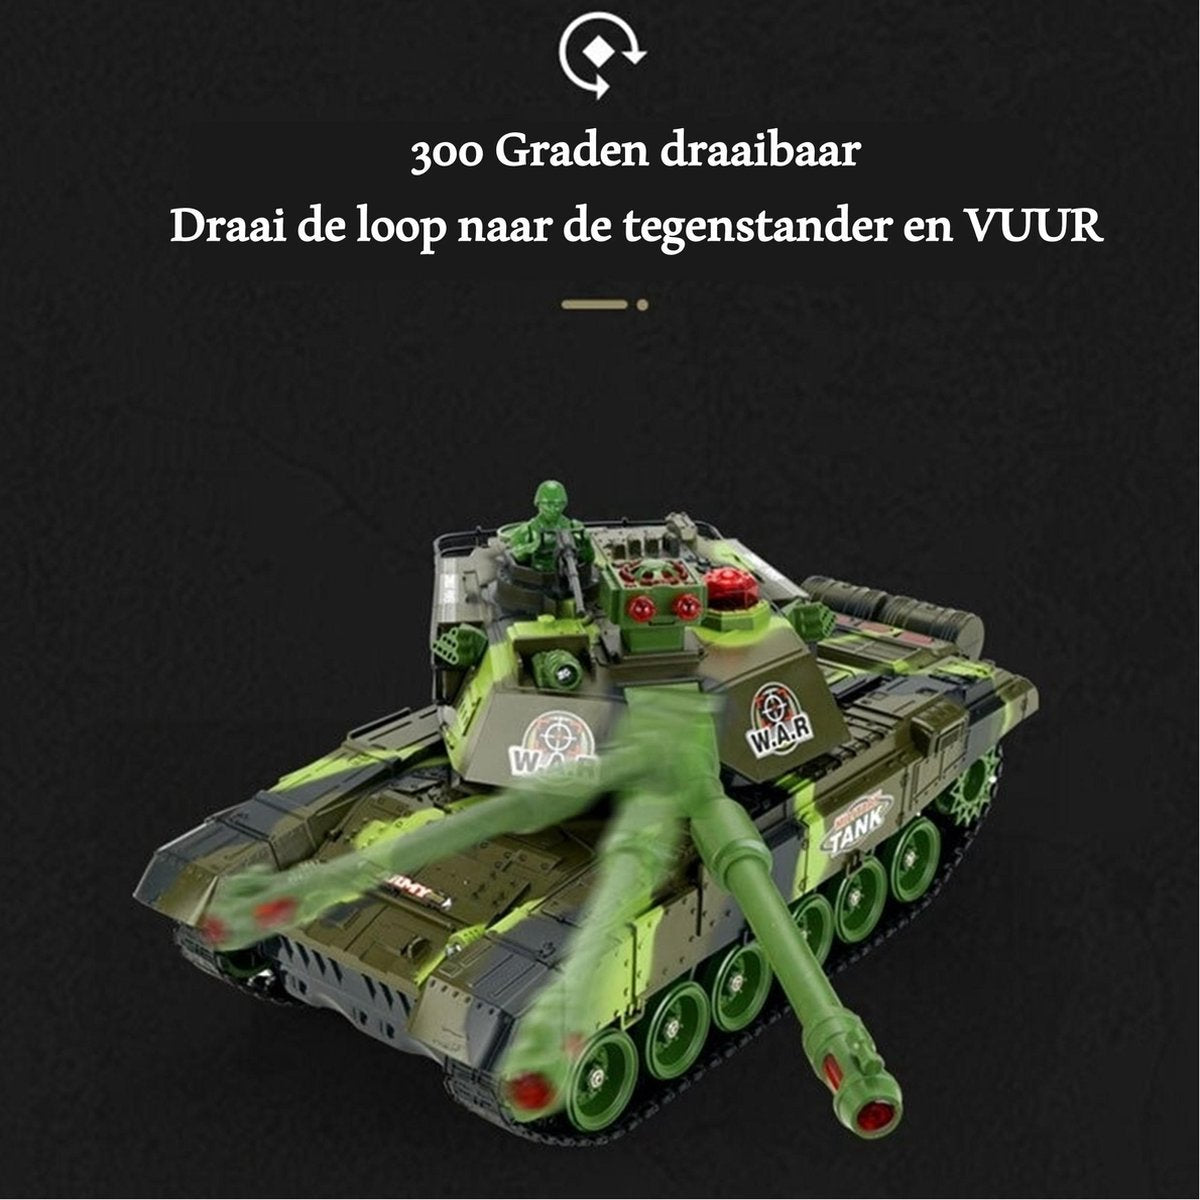 <tc>Ariko</tc> XXL RC Toy Tank - Vert - Tank télécommandé avec télécommande - Avec effets sonores et lumineux - Avec batterie interne - 2,4 Gz - Échelle 1:14